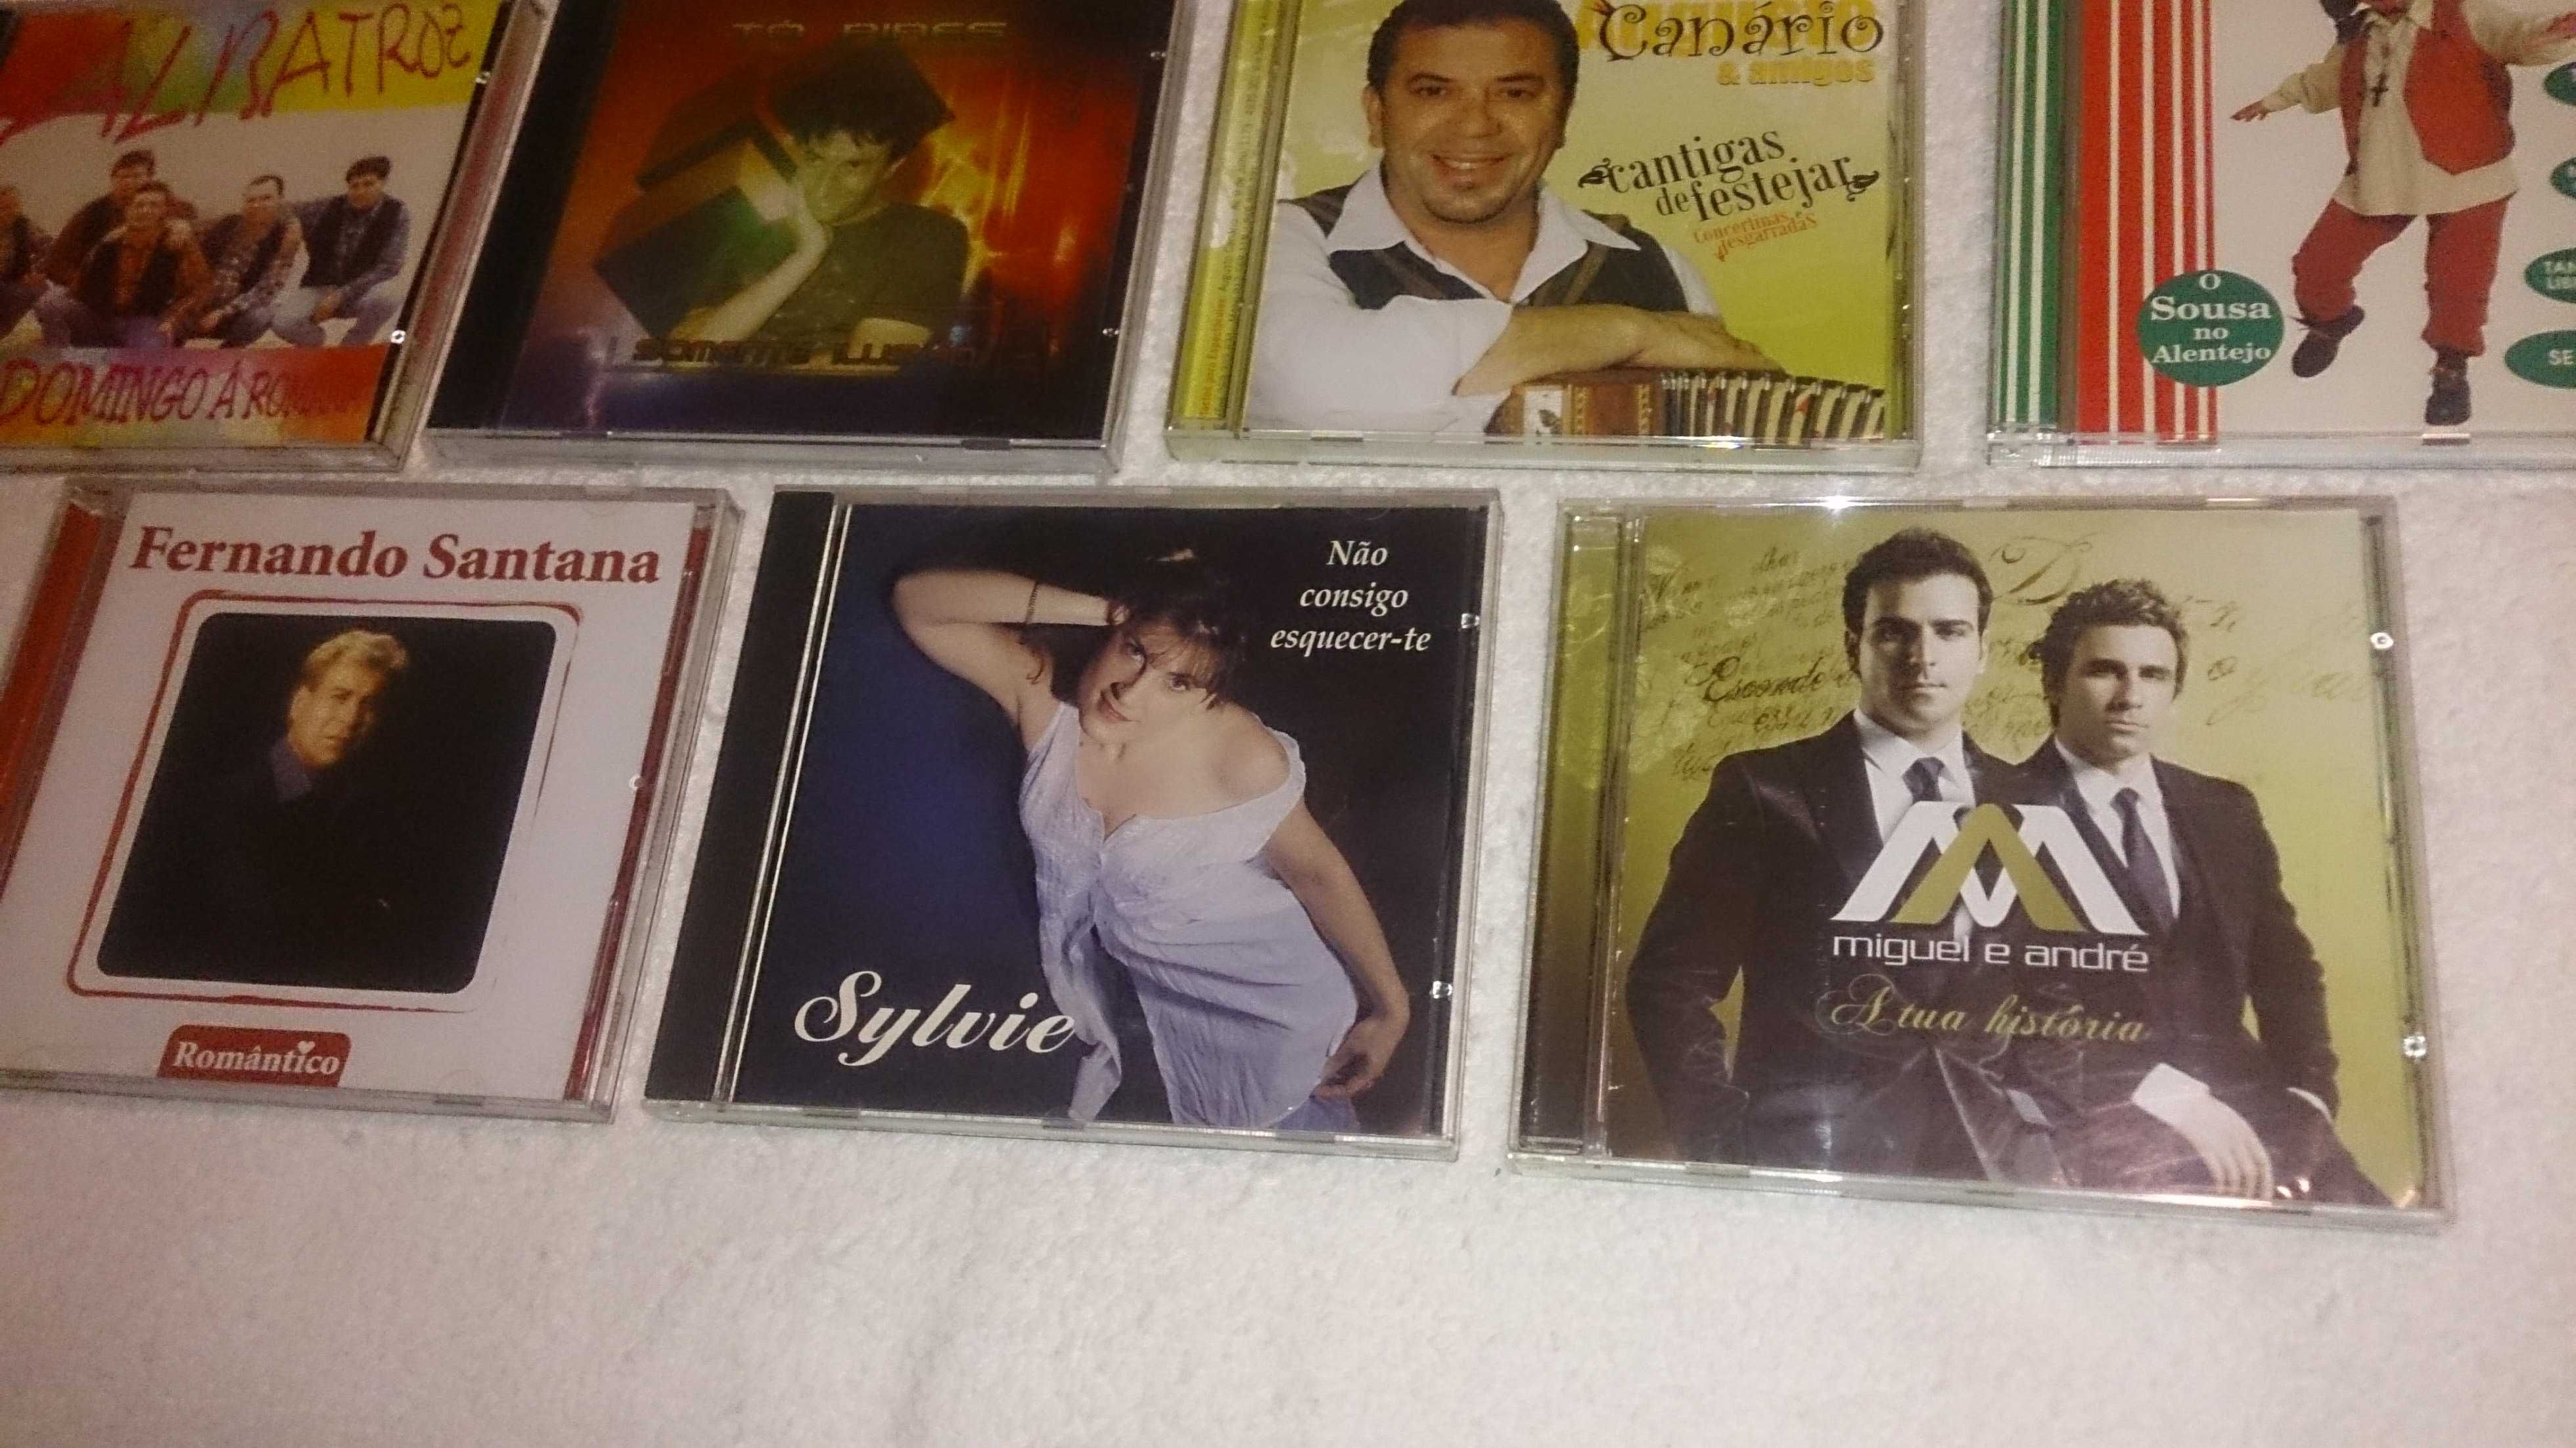 música pimba / popular (albatroz, canário, santana) vários cds